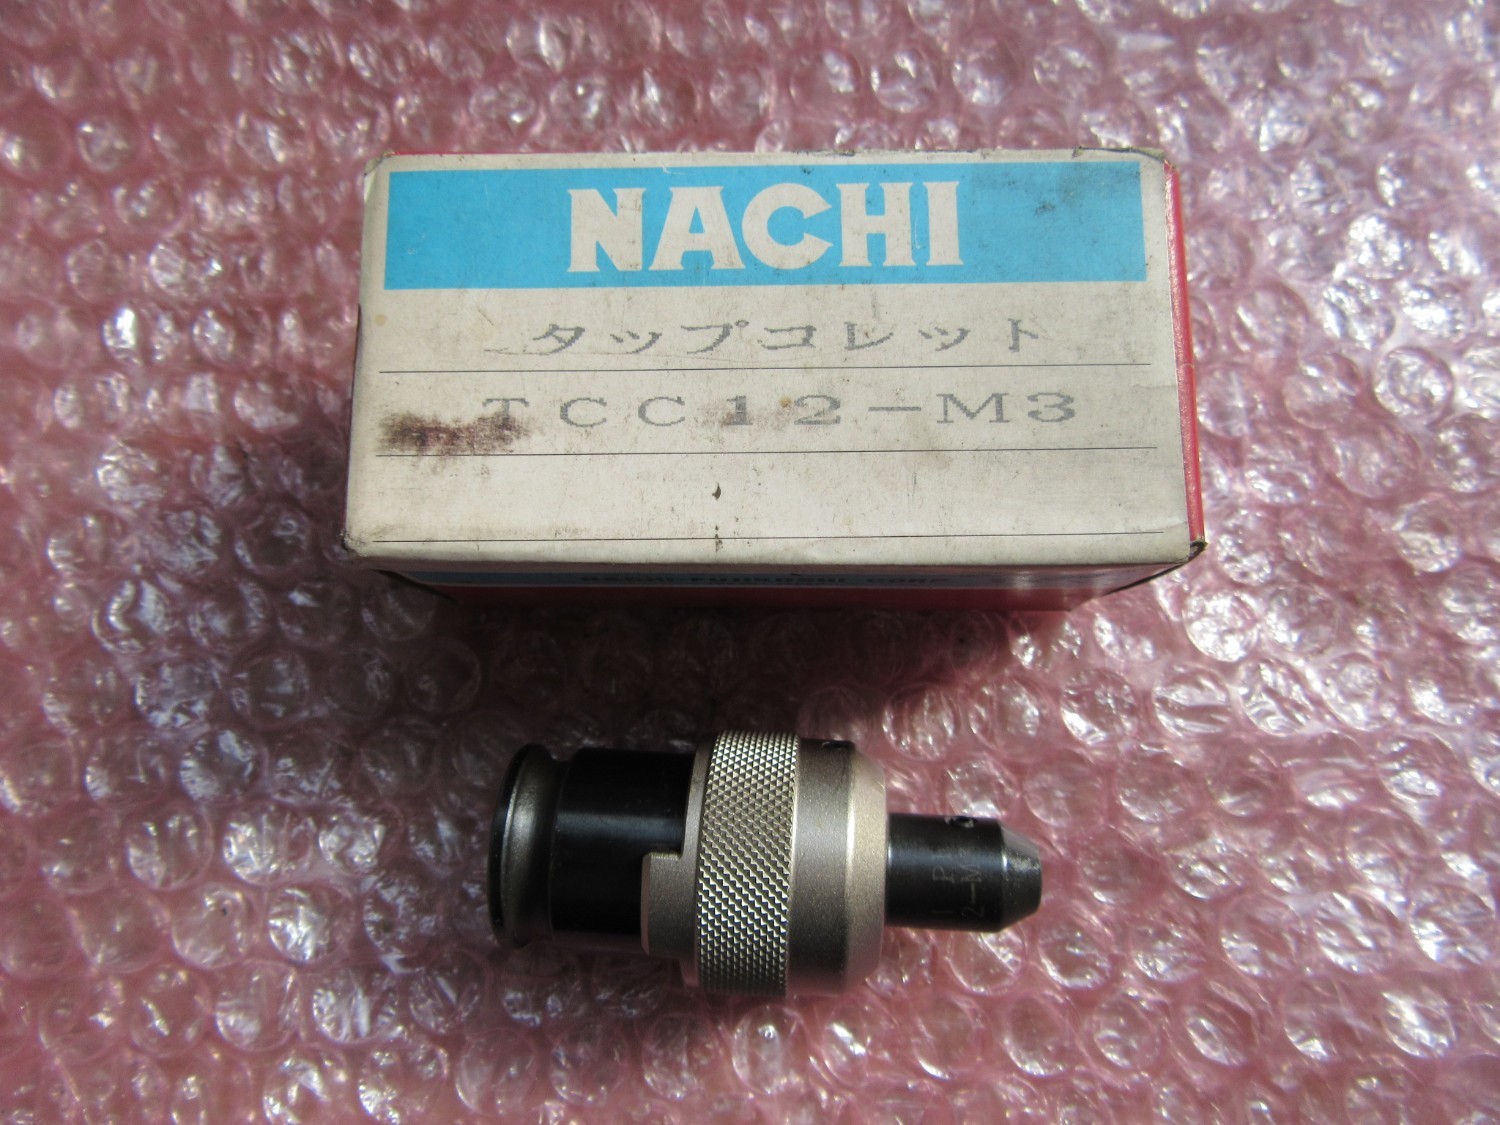 中古Tap collet 【タップコレット】 TCC12-M3 NACHI